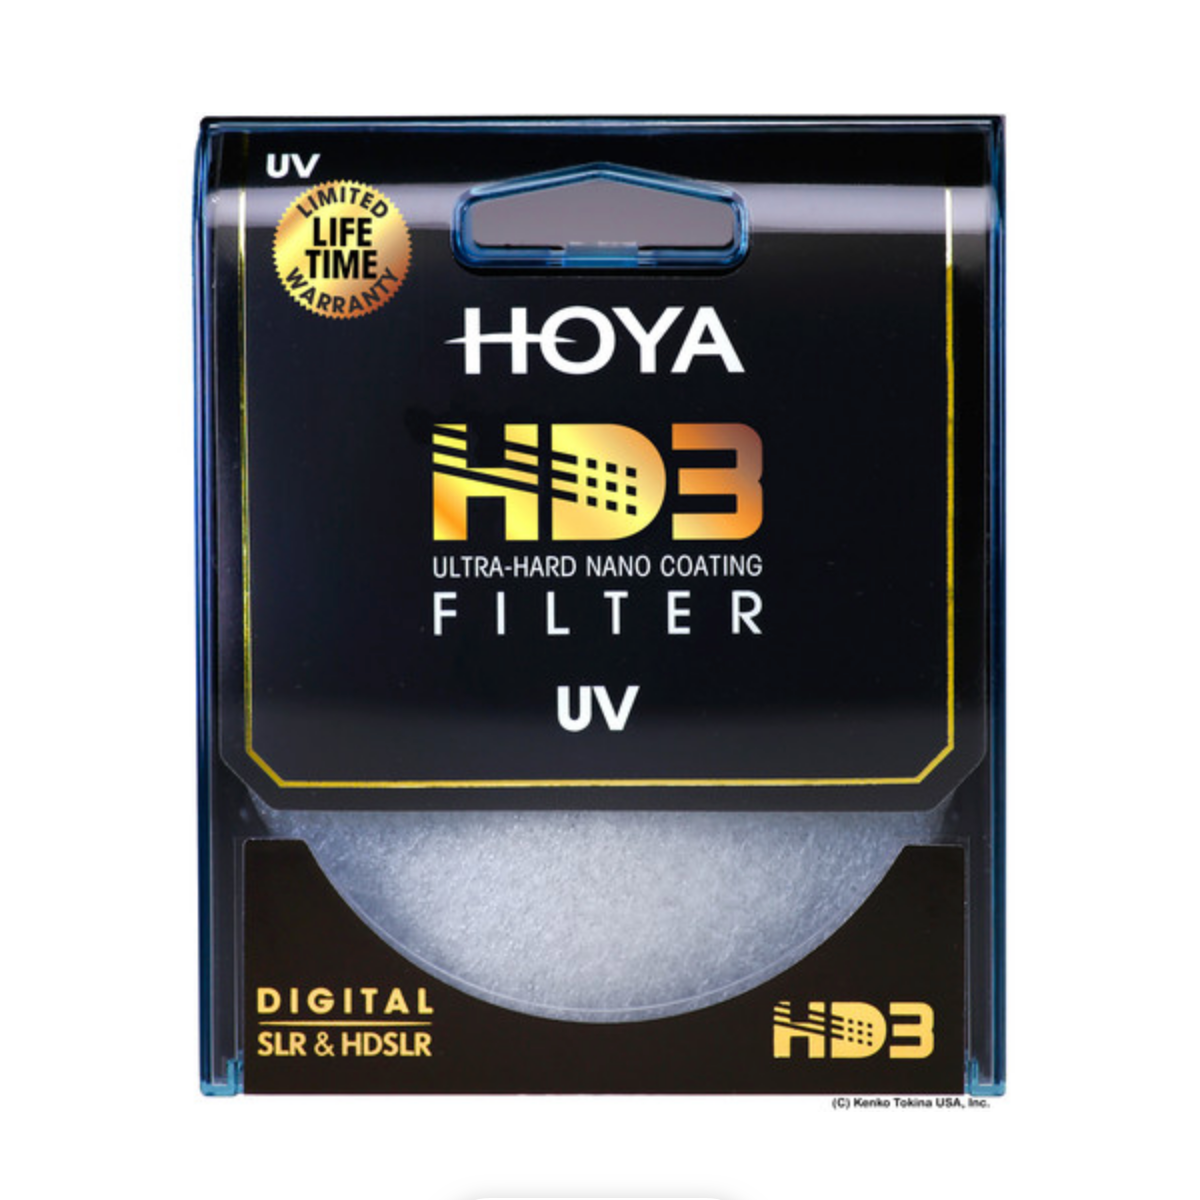 Hoya HD3 UV Filter - 82mm